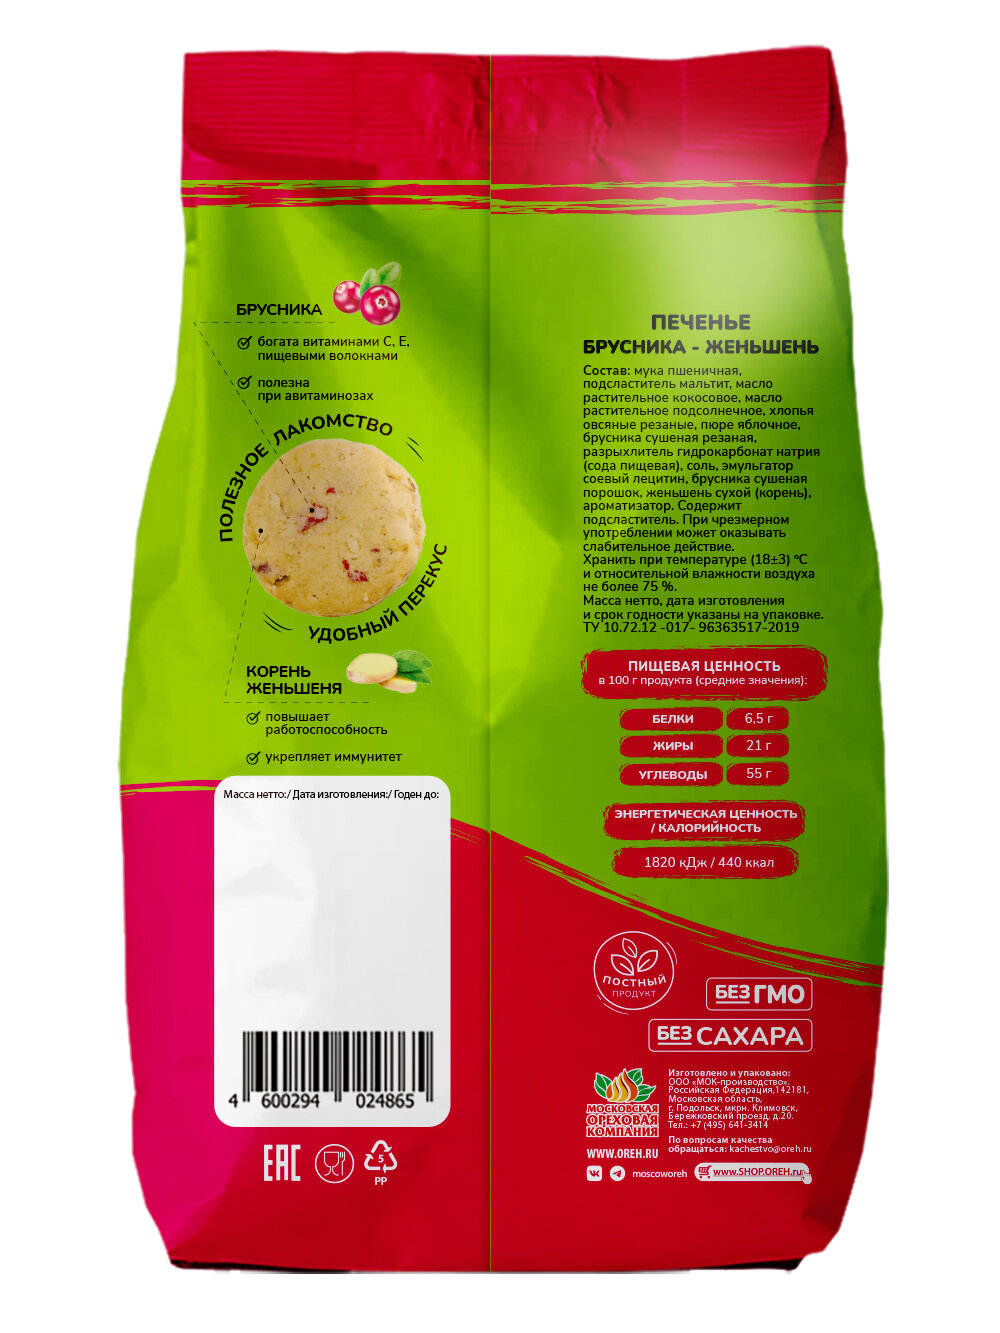 Печенье Vitok полезное натуральное без сахара ассорти протеиновое в коробке, 2 шт по 300 г